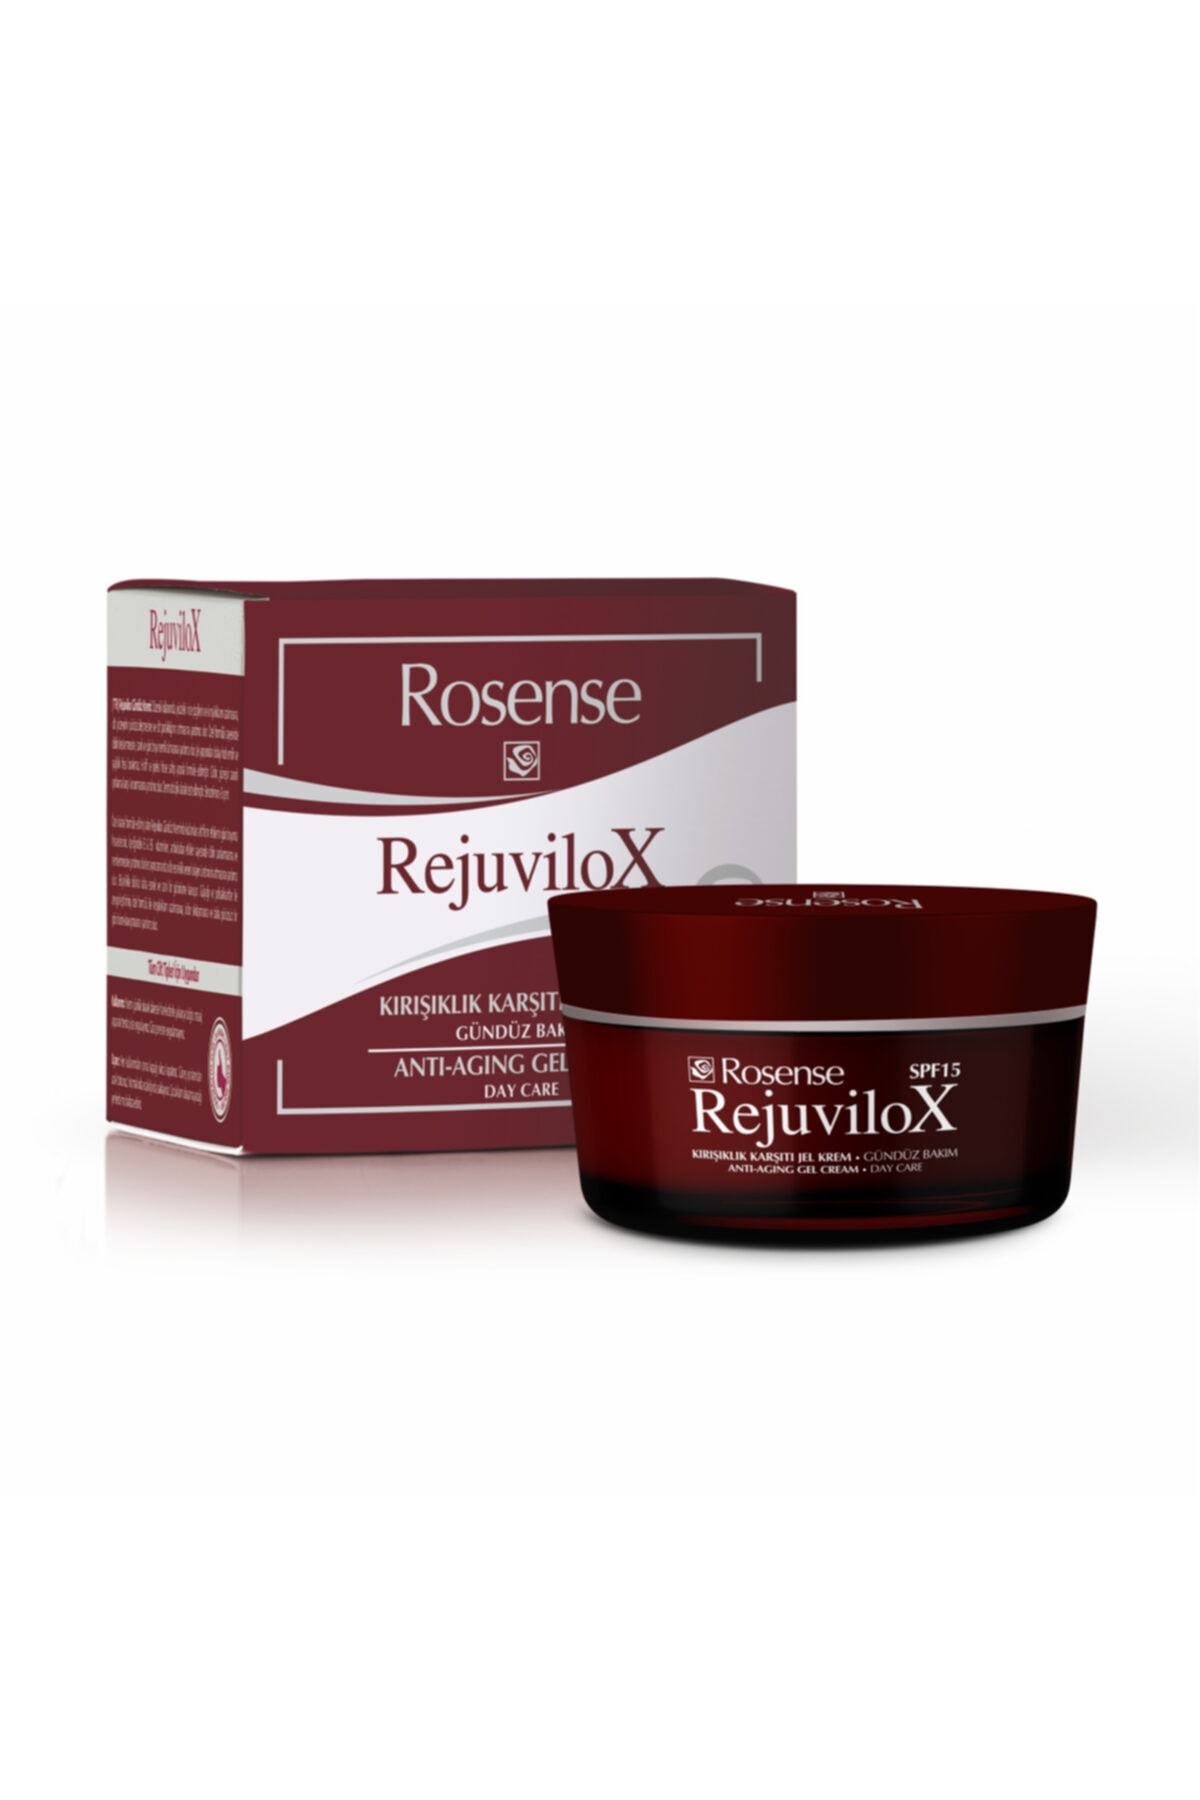 Rosense Rejuvilox Kırışıklık Karşıtı Jel Krem - Gündüz Bakım - 50 Ml